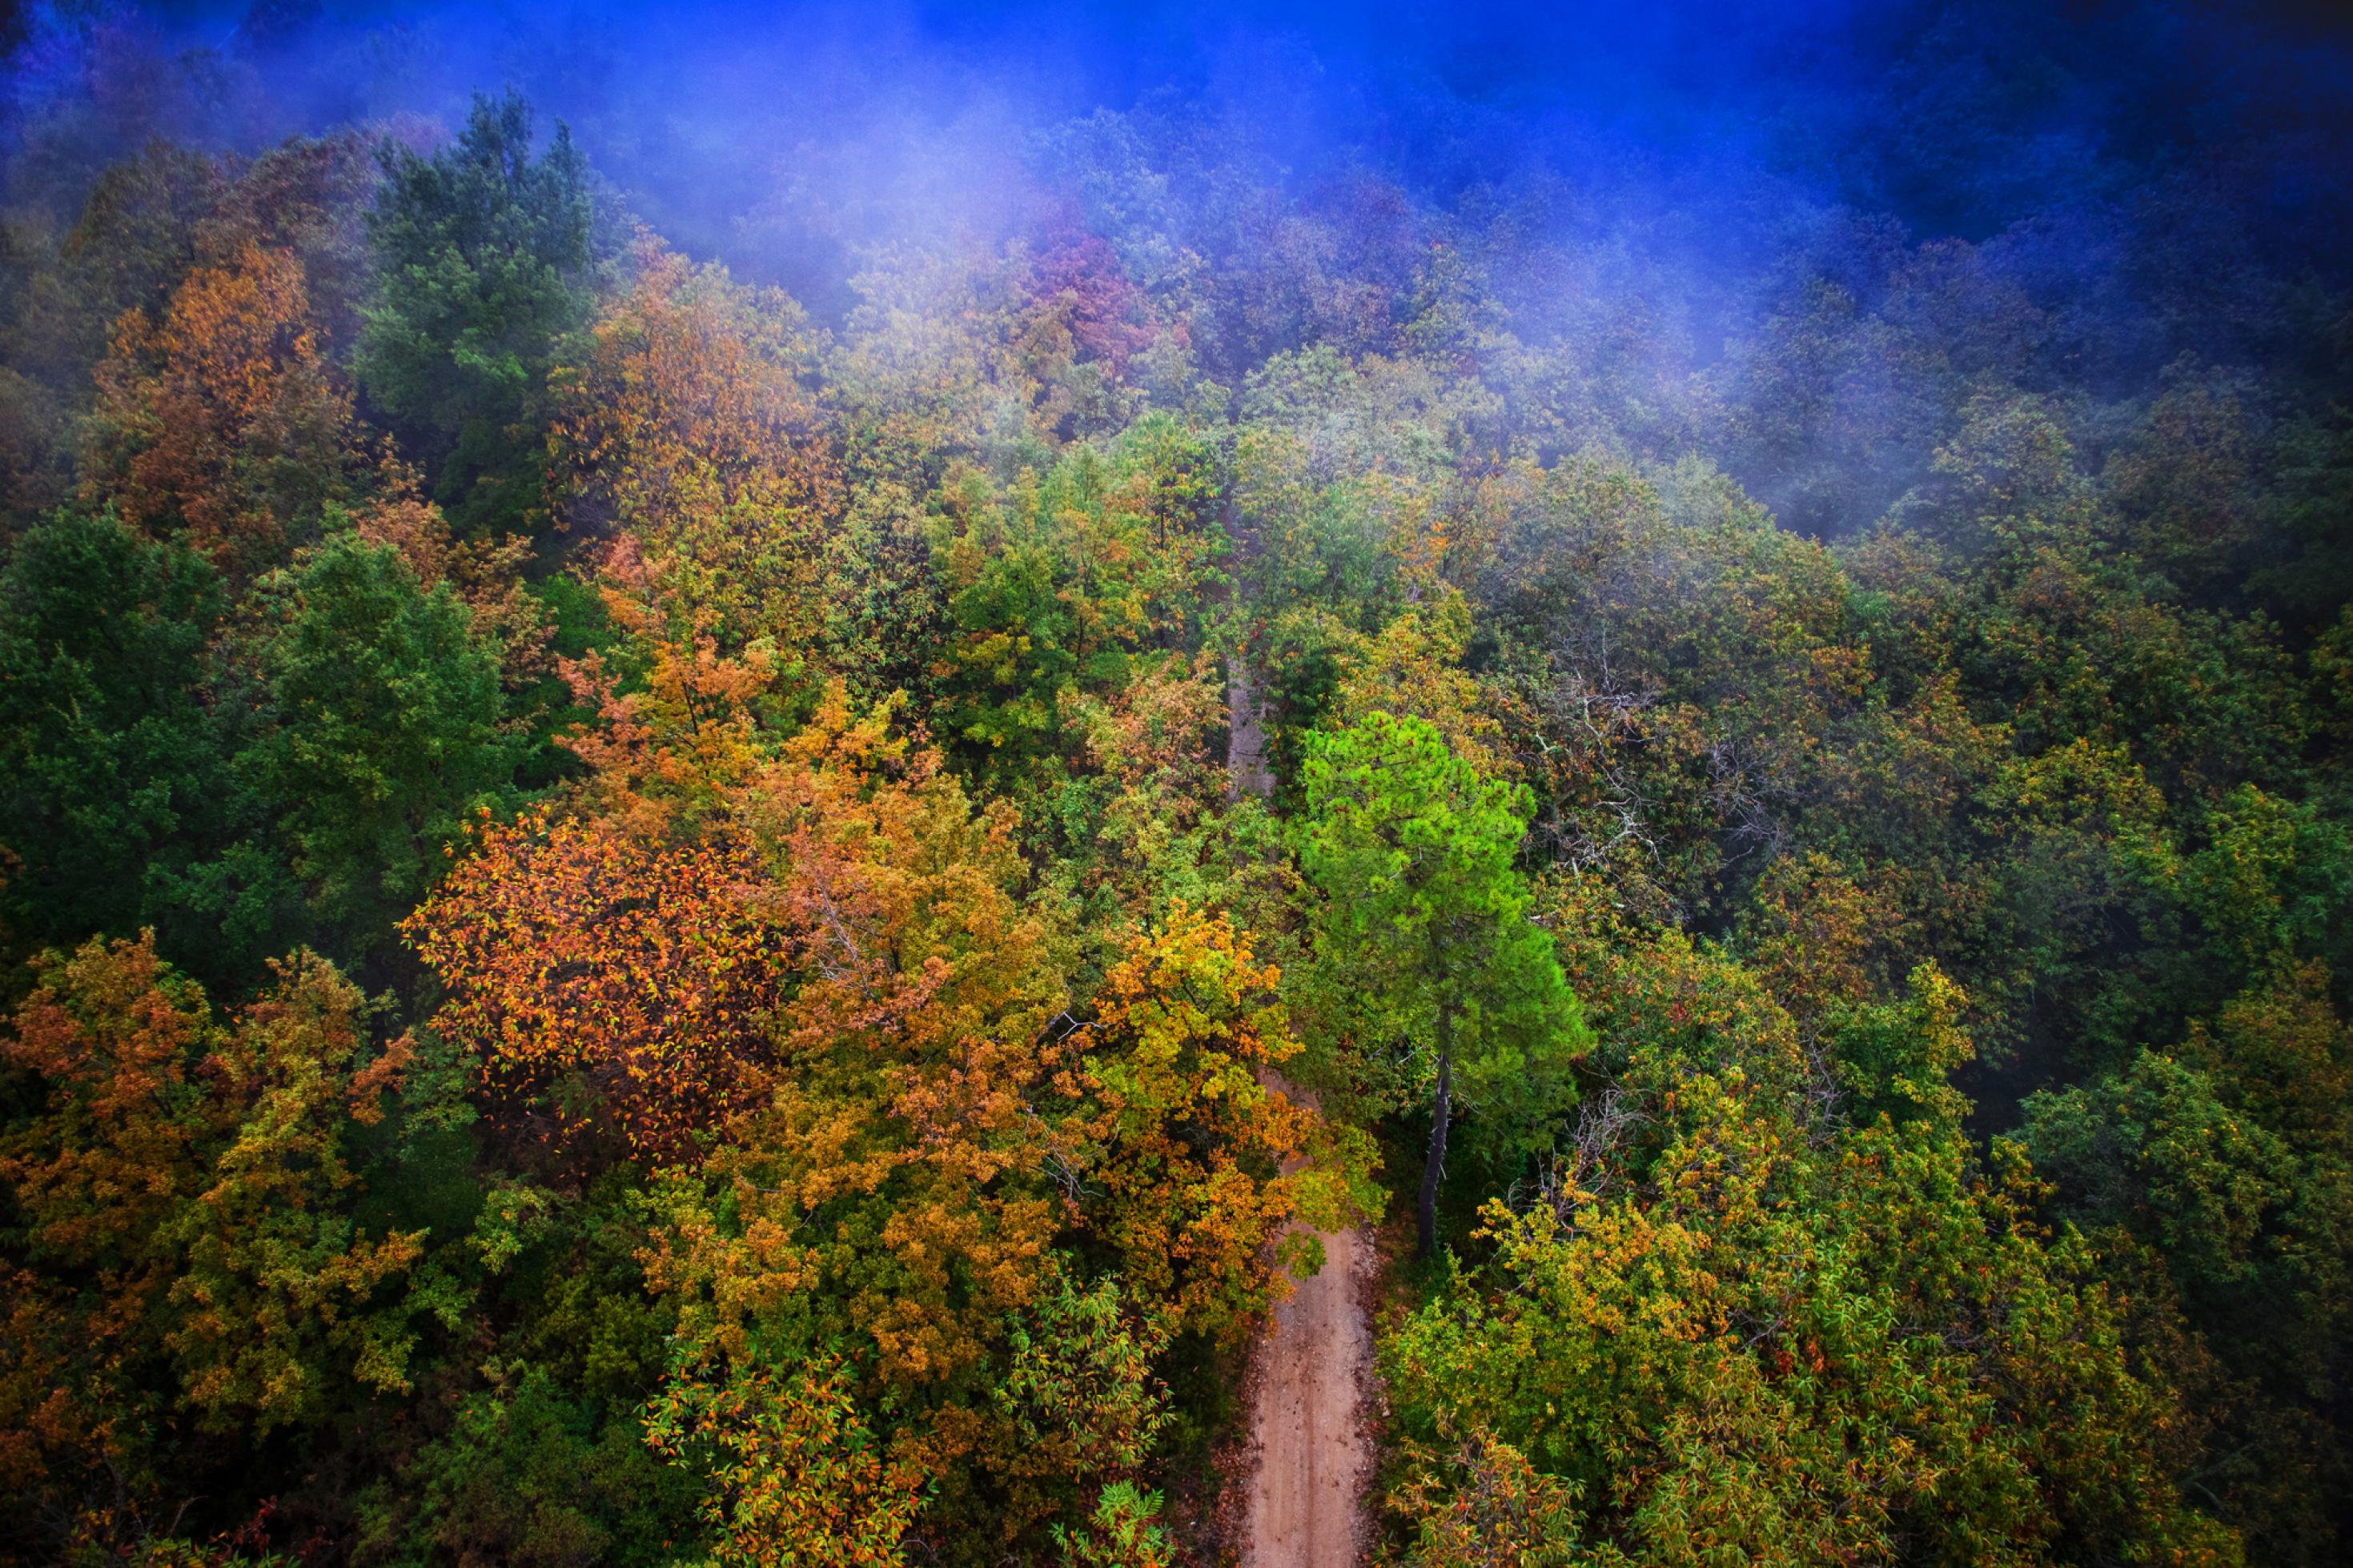 Luftbild eines Waldes mit farbenfrohem Herbstlaub